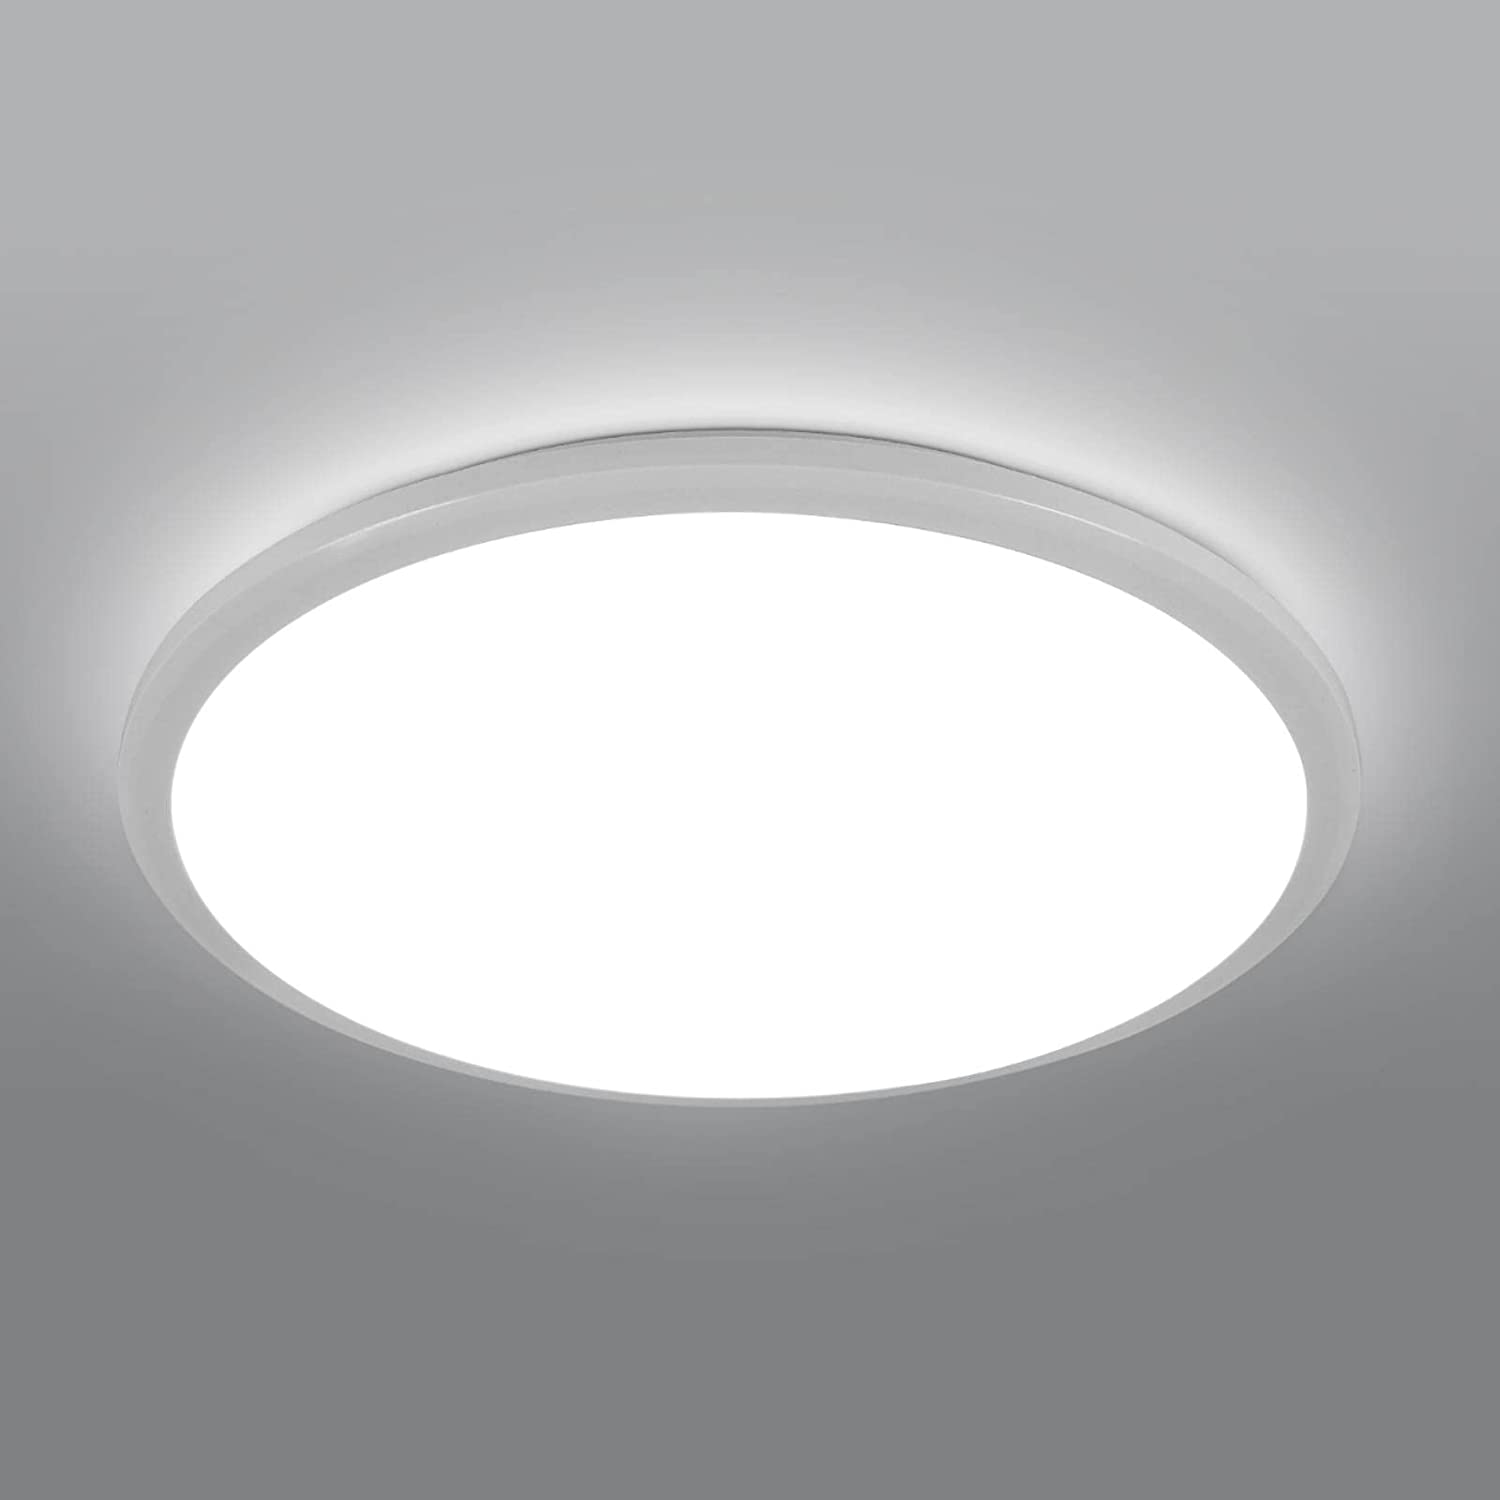 24W Plafonnier LED, Ø 30cm Lampe Plafond 2400LM Imperméable IP44